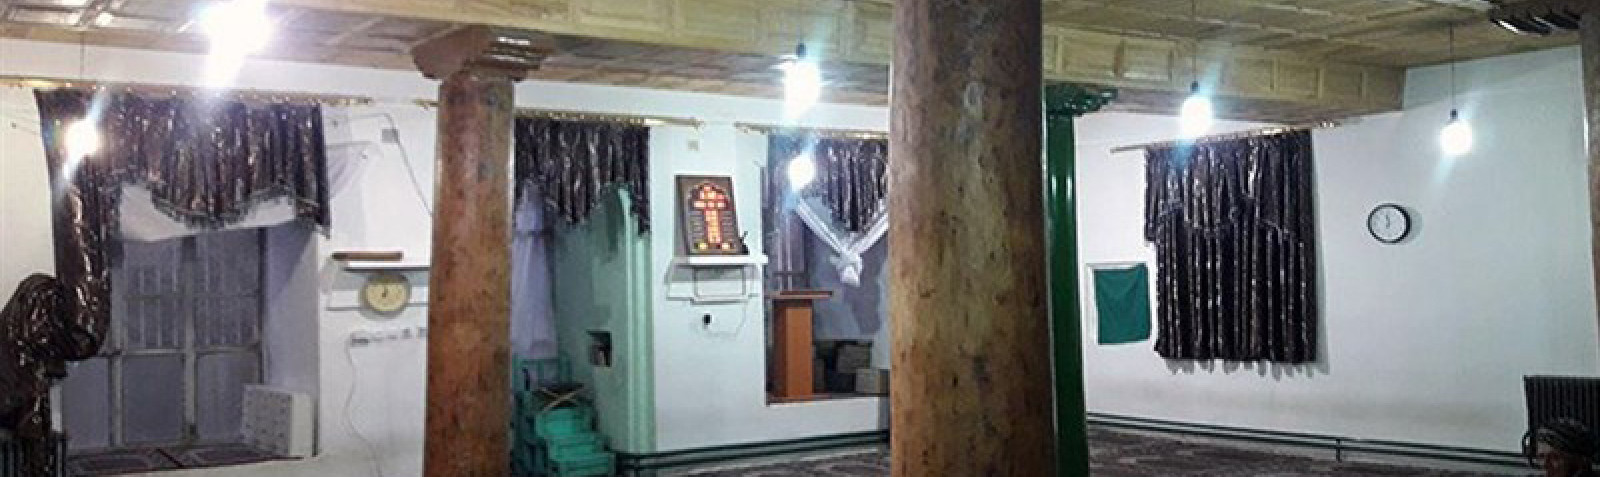 Мечеть Джаме в Авиханге